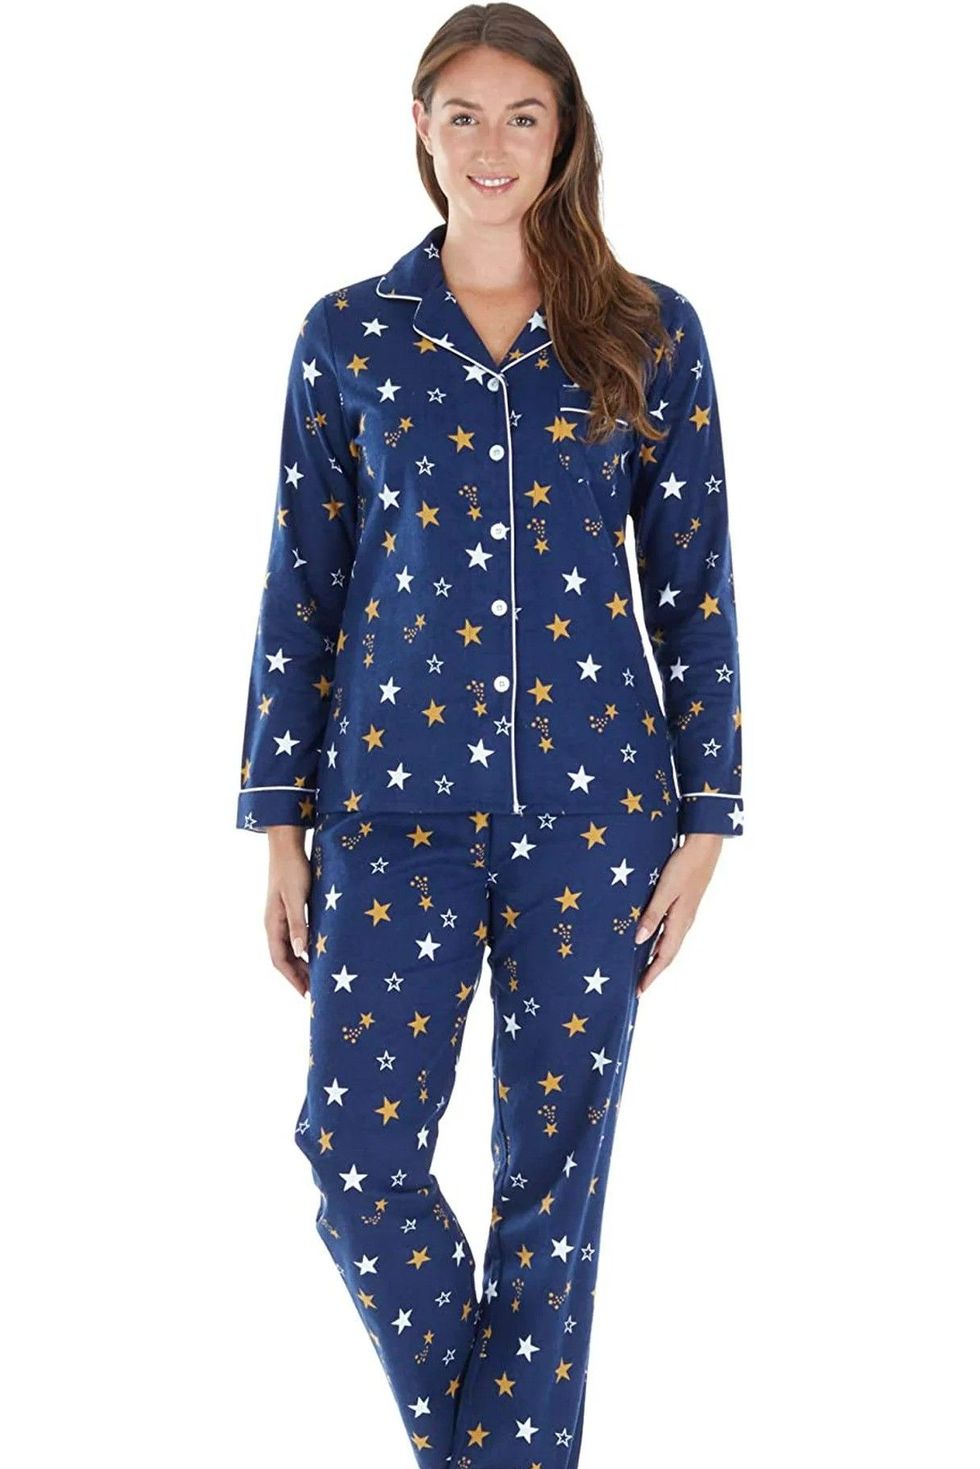 Flannel Pajamas